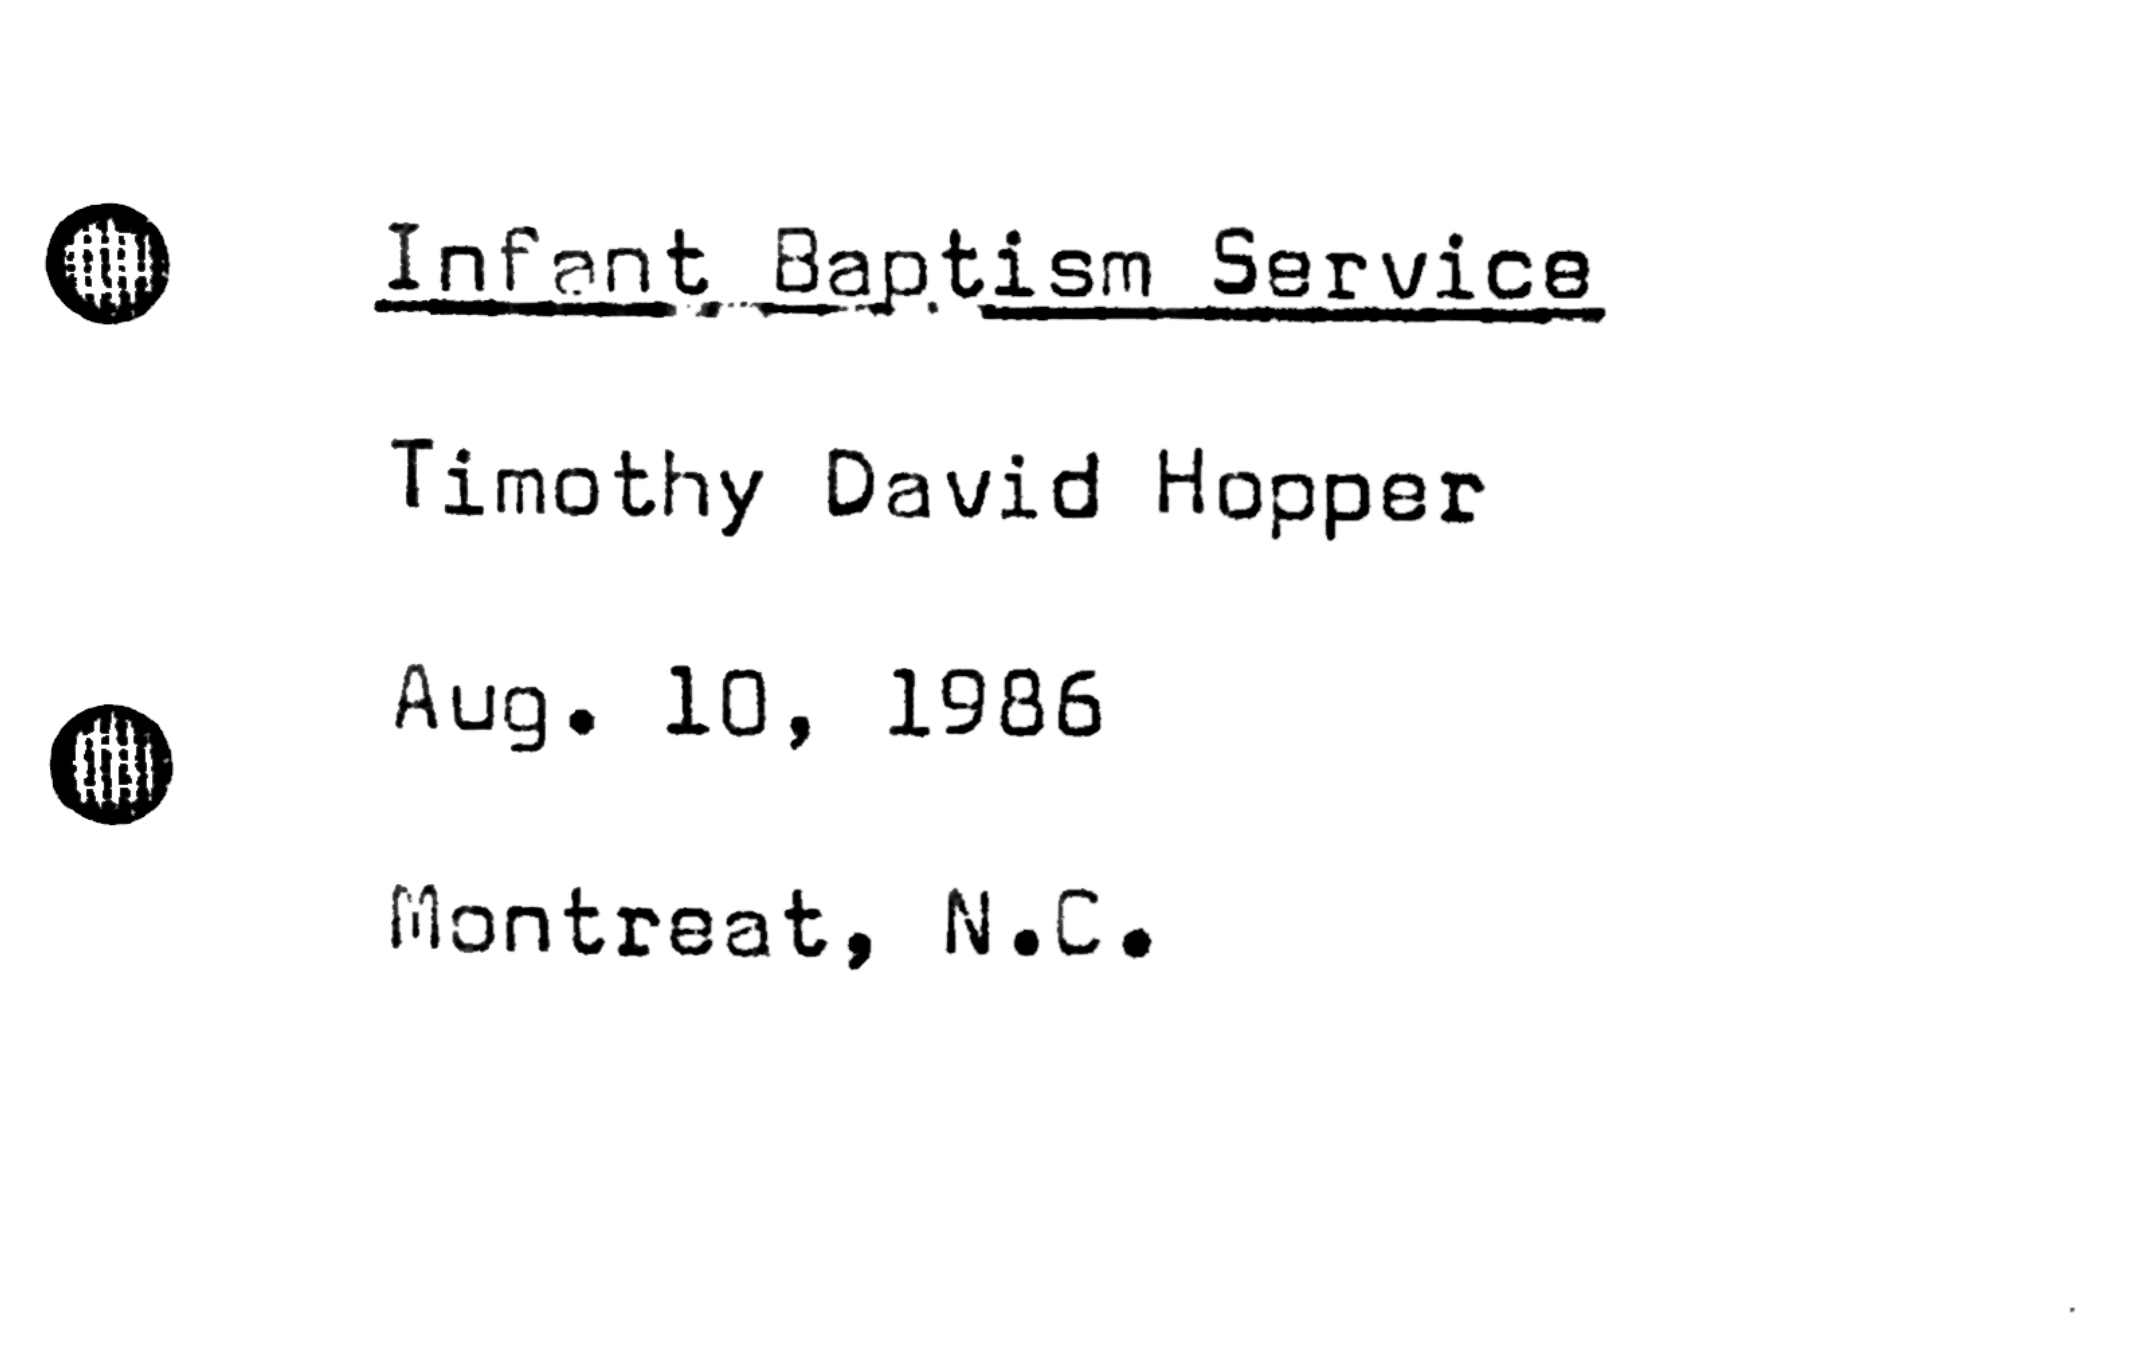 Joe B. Hopper's baptism homily for the baptism of his grandson in 1986.